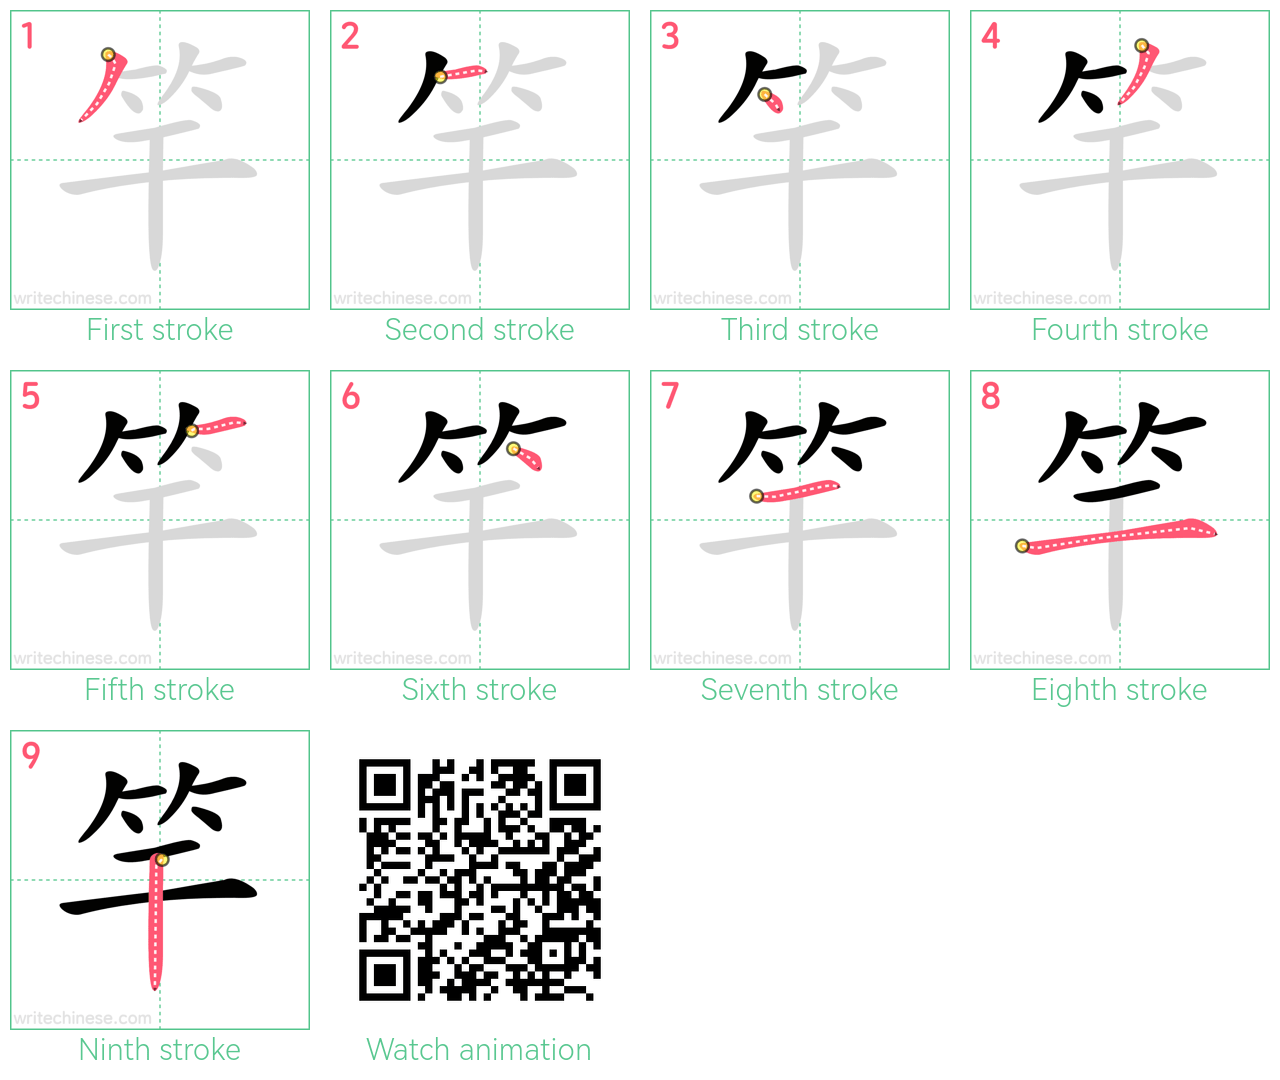 竿 step-by-step stroke order diagrams